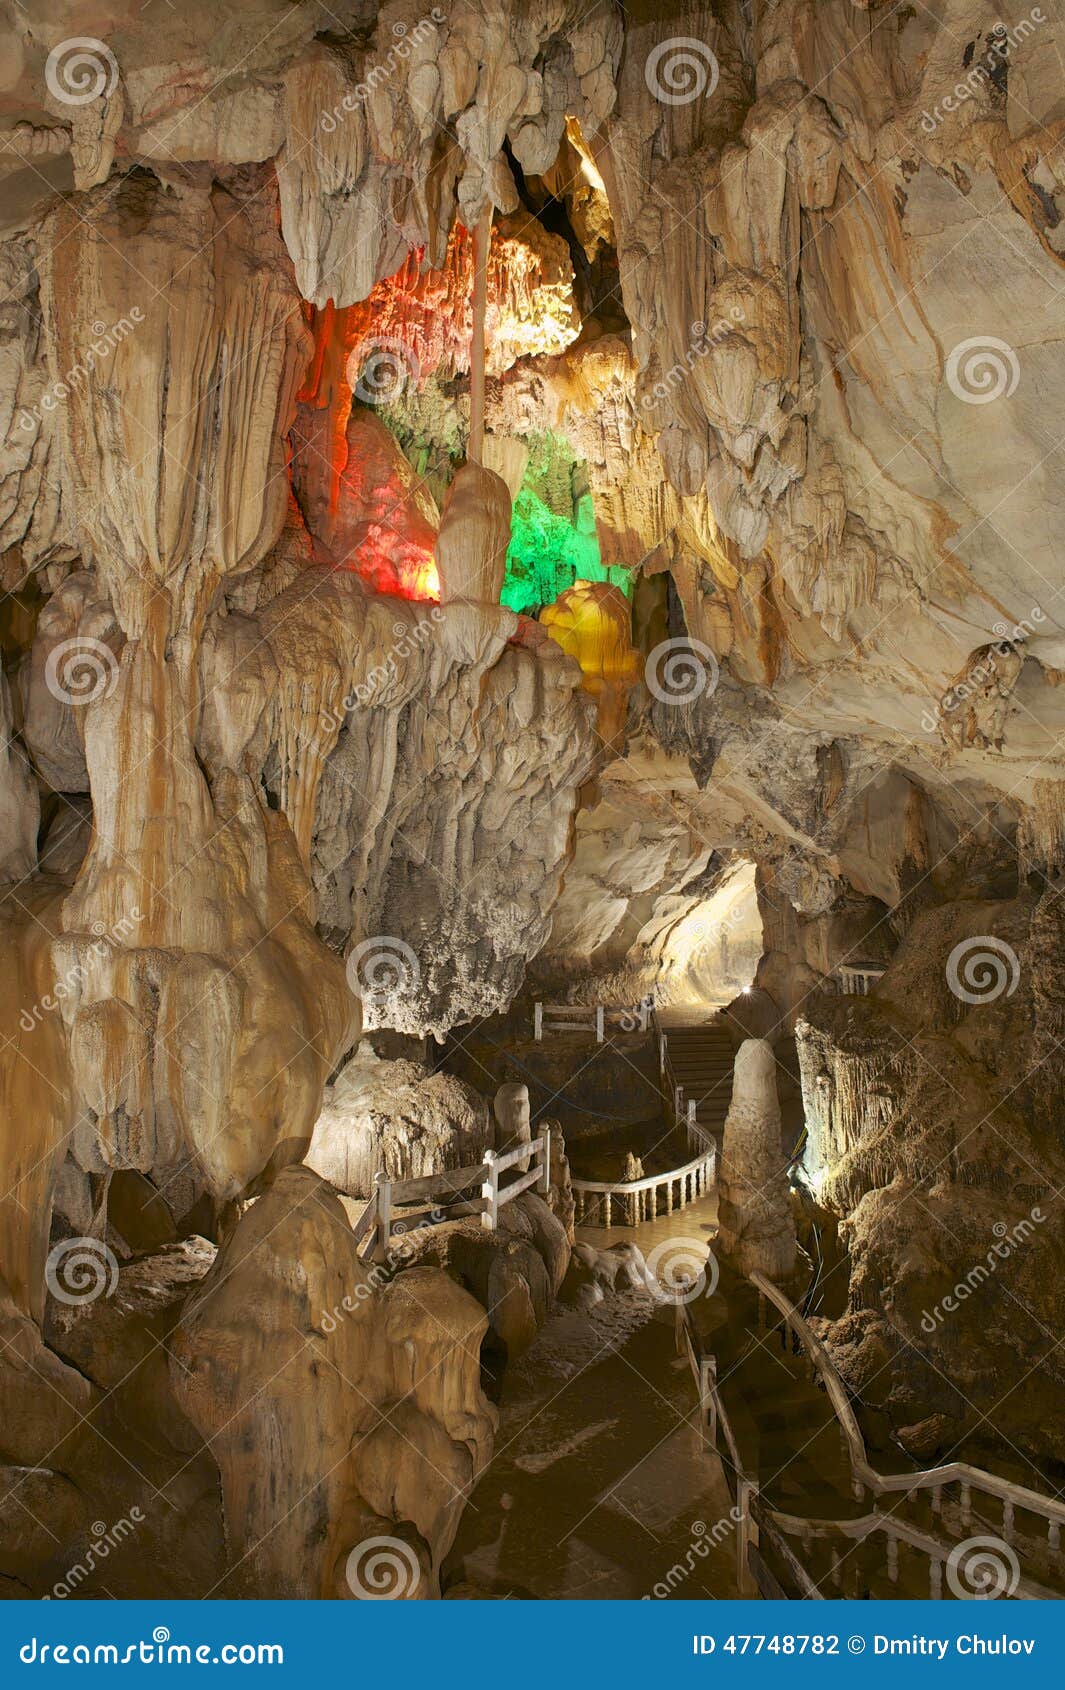 beautiful tham jang cave, vang vieng, laos